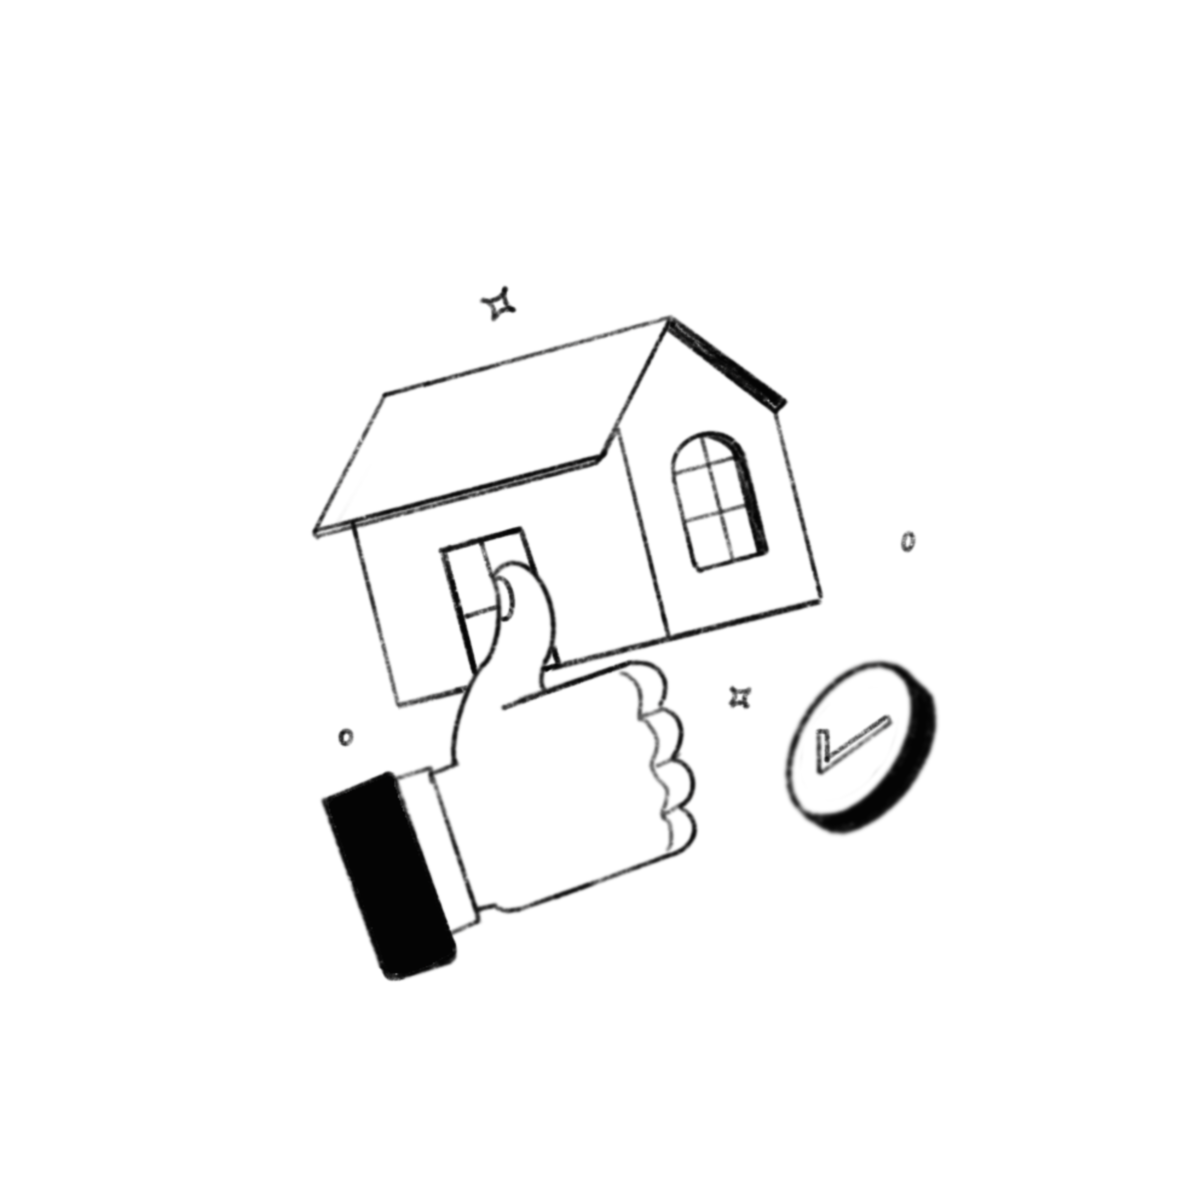 adobe illustrator digital illustration concept art home loans Mortgage real estate house home